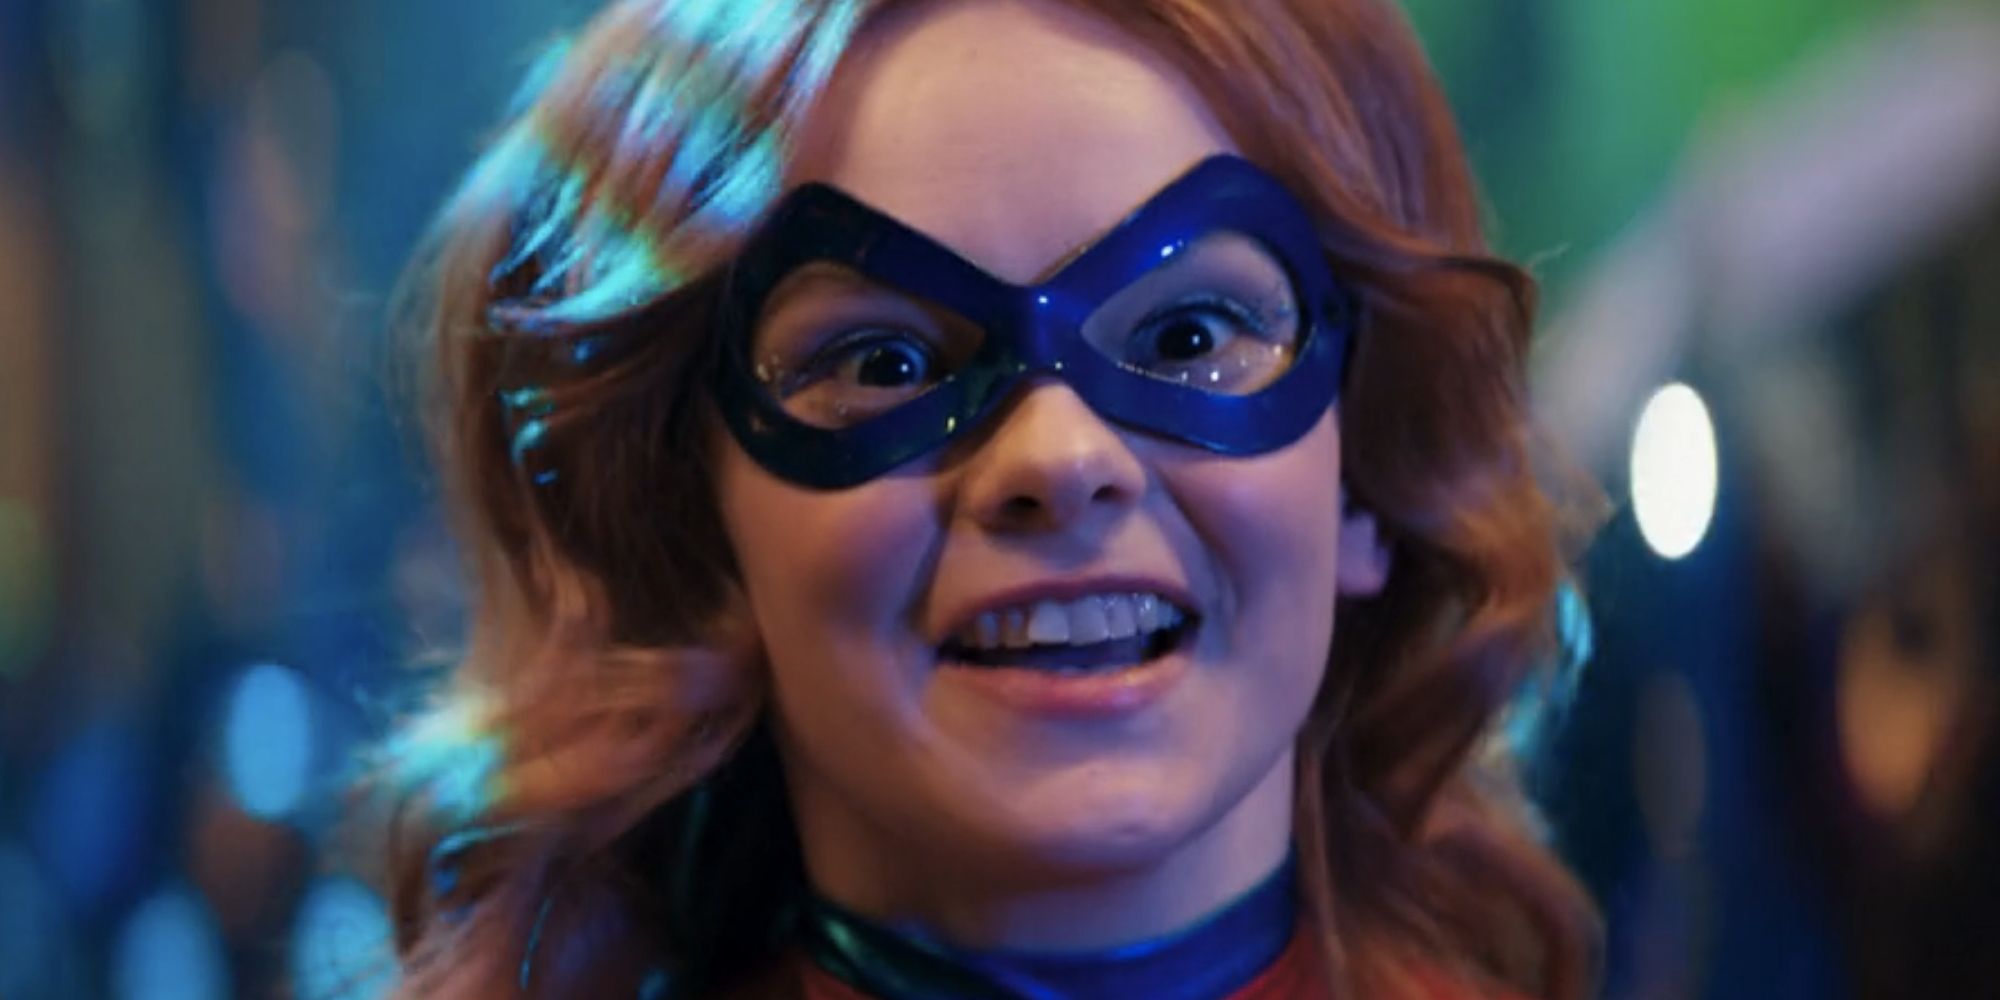 Laurel Marsden as Zoe Zimmer, dressed as Captain Marvel